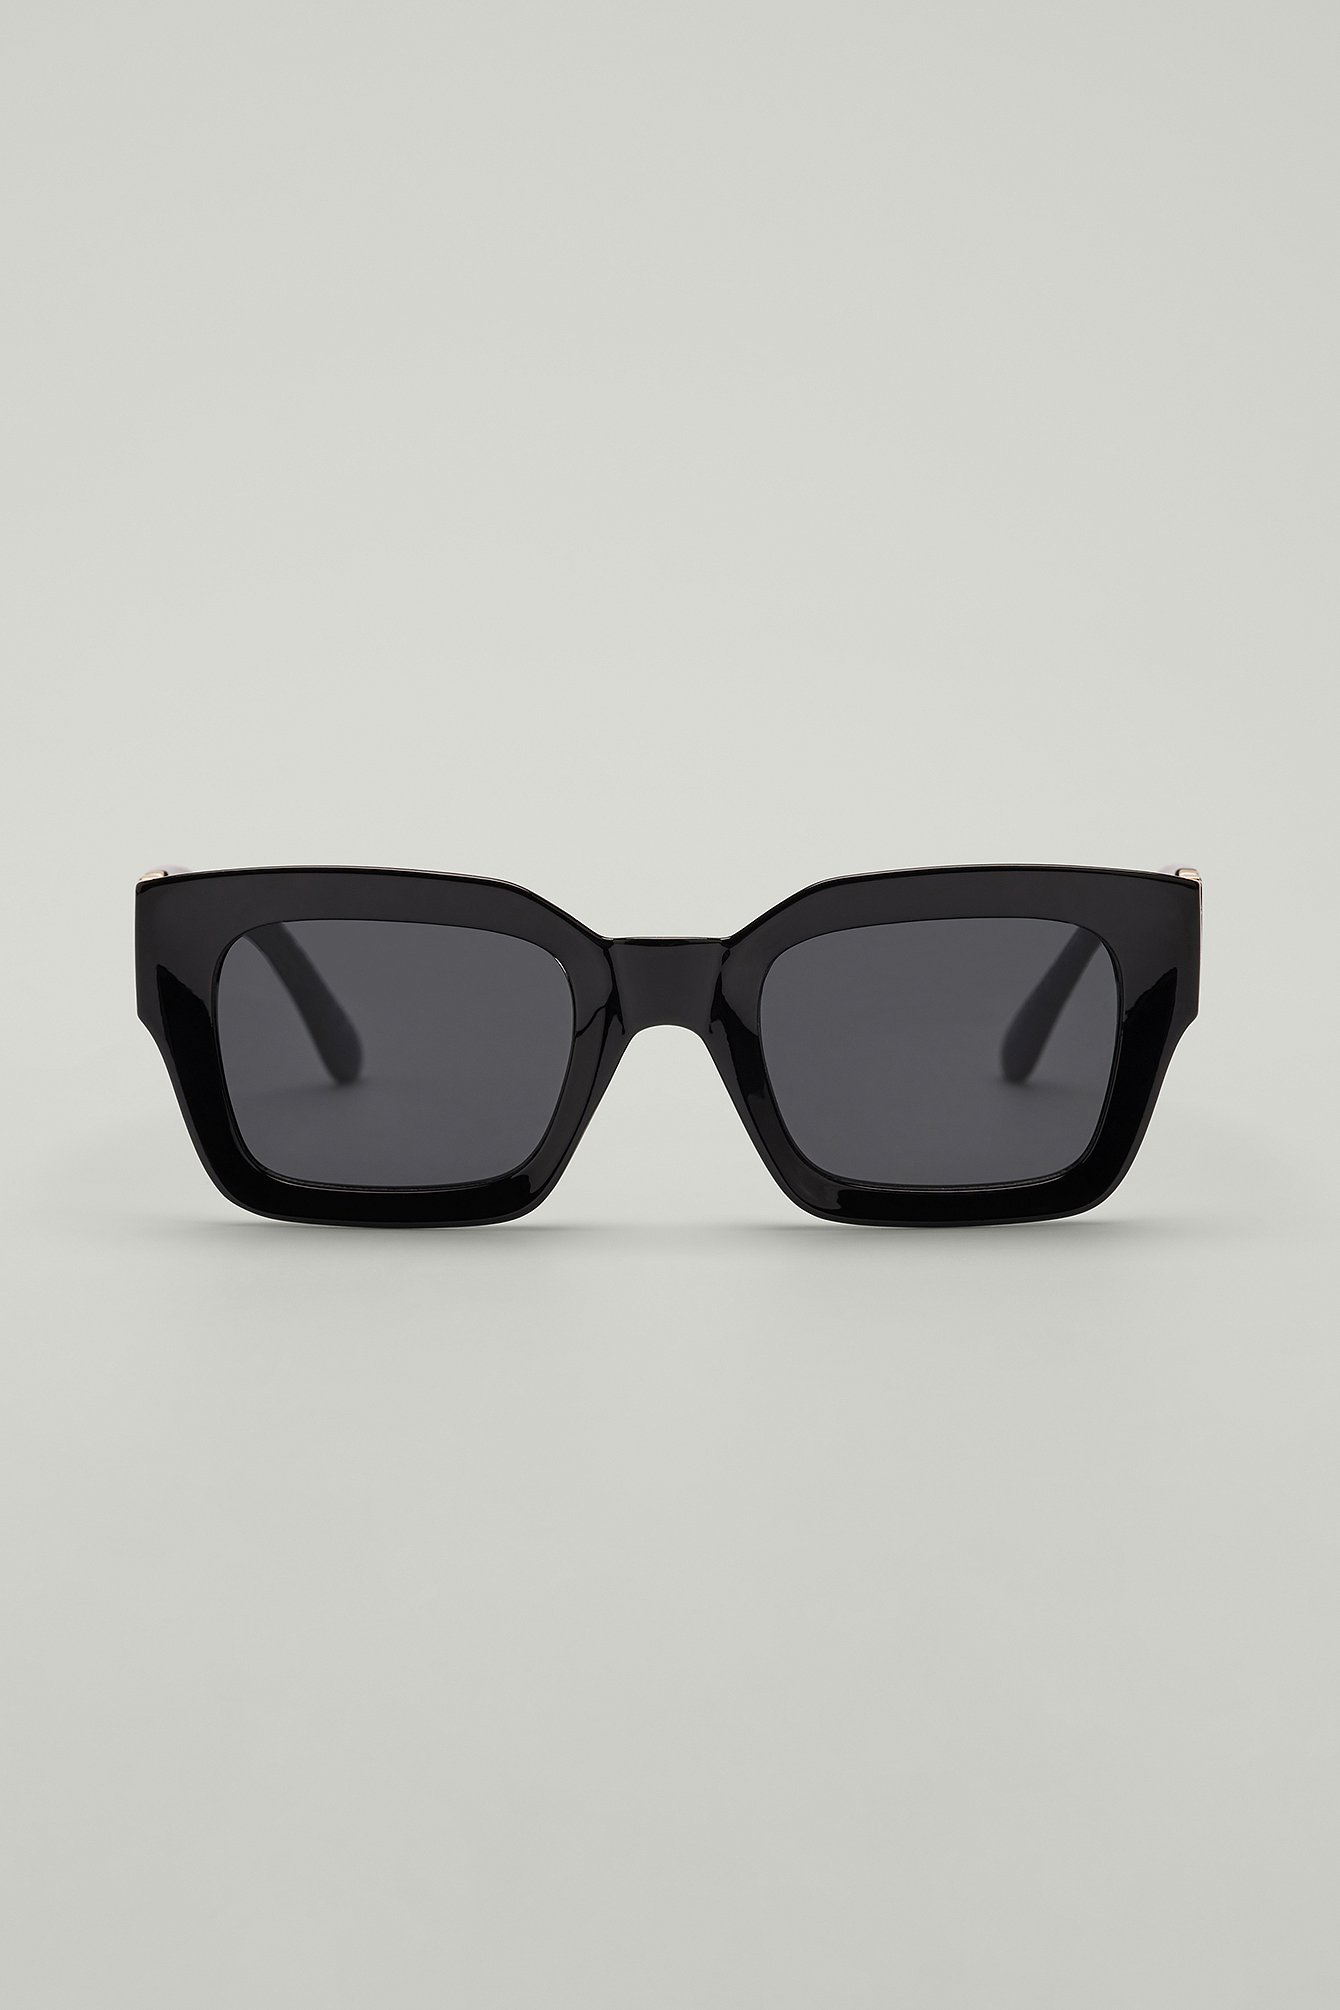 Schwarze Sonnenbrille Dickem Rahmen, 90 Tage Käuferschutz